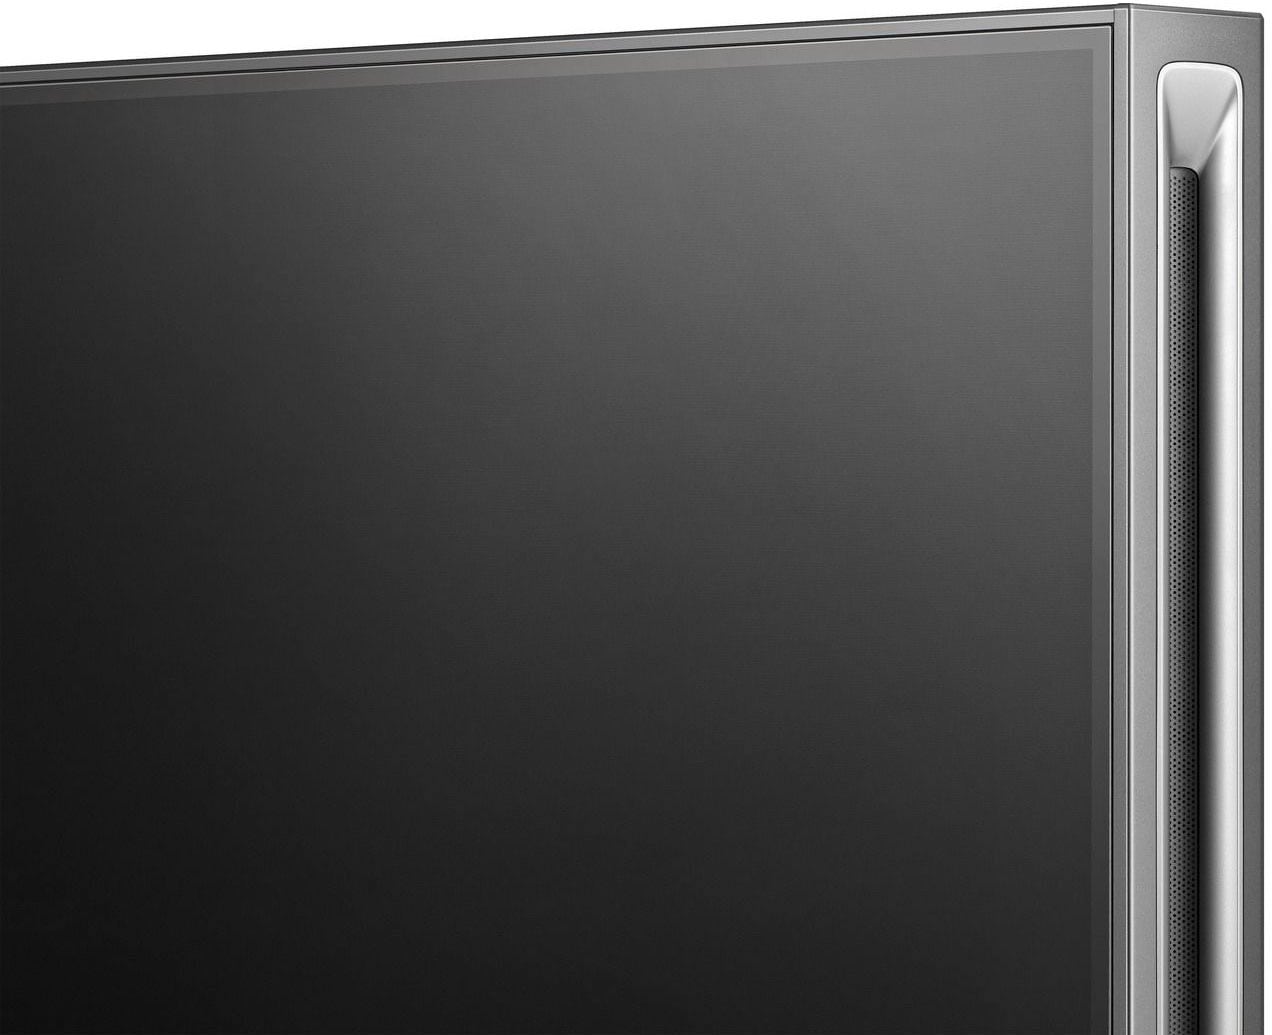 Hisense Mini-LED-Fernseher »65UXKQ«, 164 cm/65 Zoll, 4K Ultra HD, Smart-TV